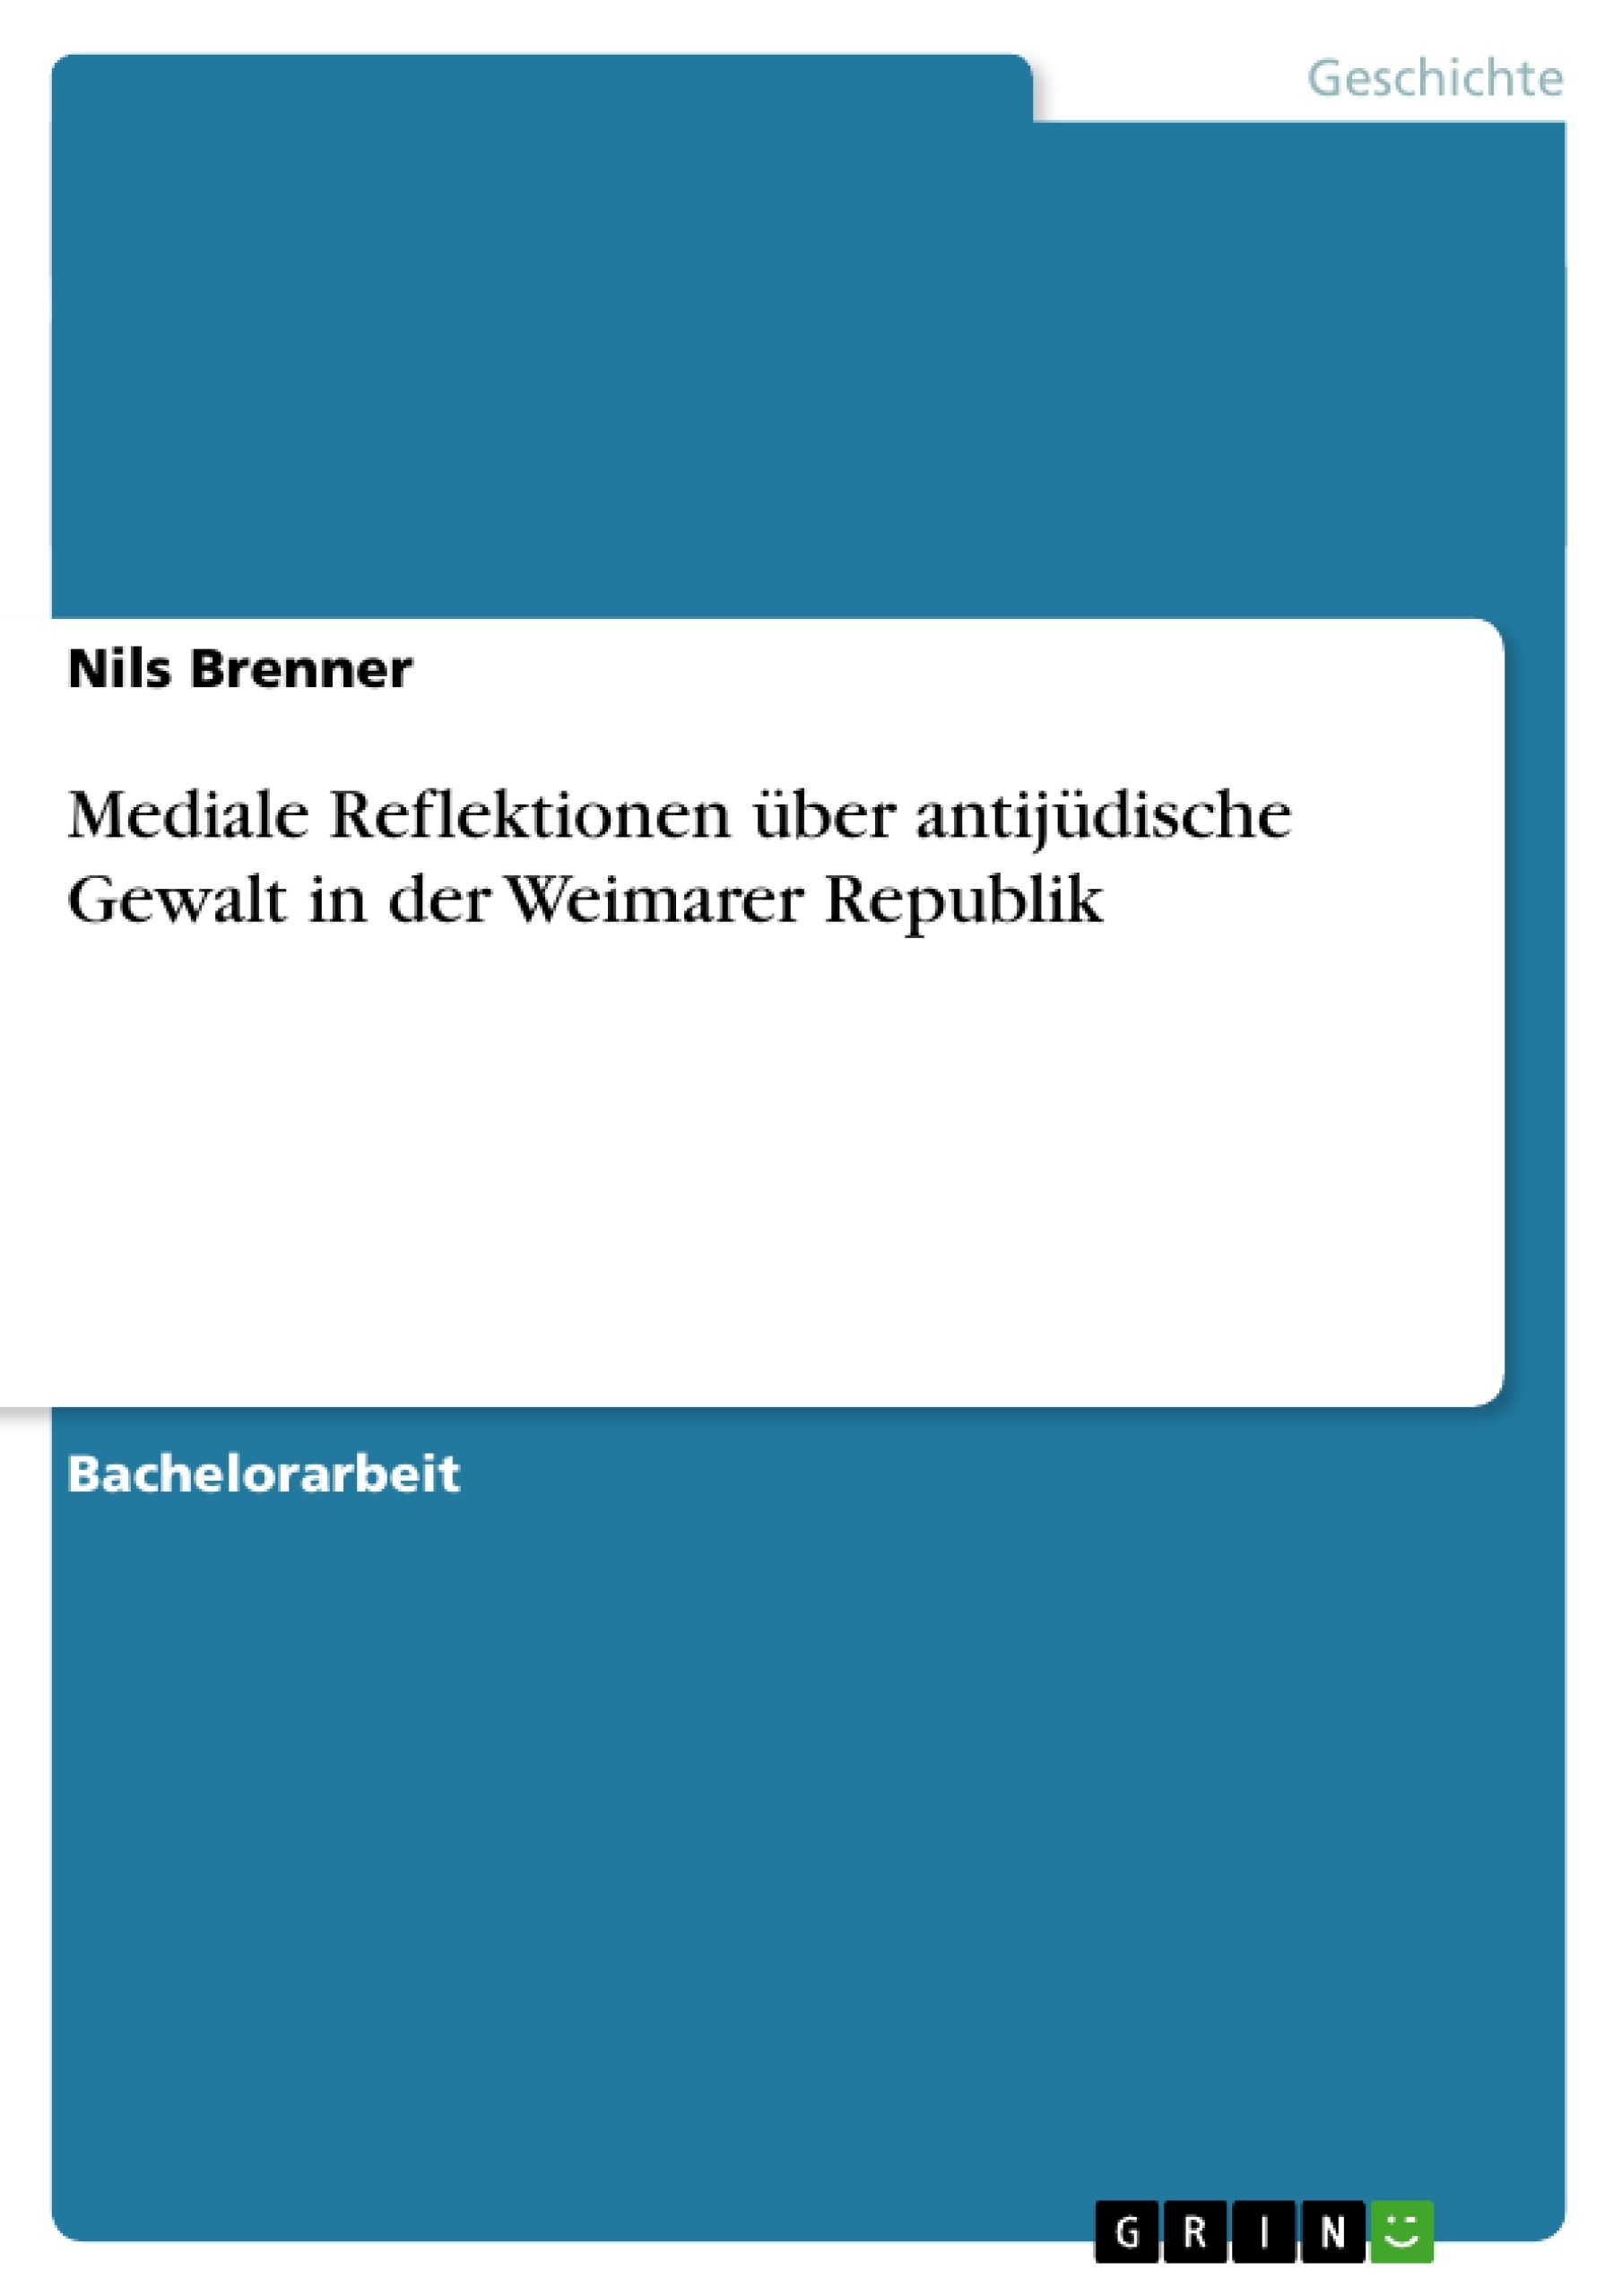 Title: Mediale Reflektionen über antijüdische Gewalt in der Weimarer Republik